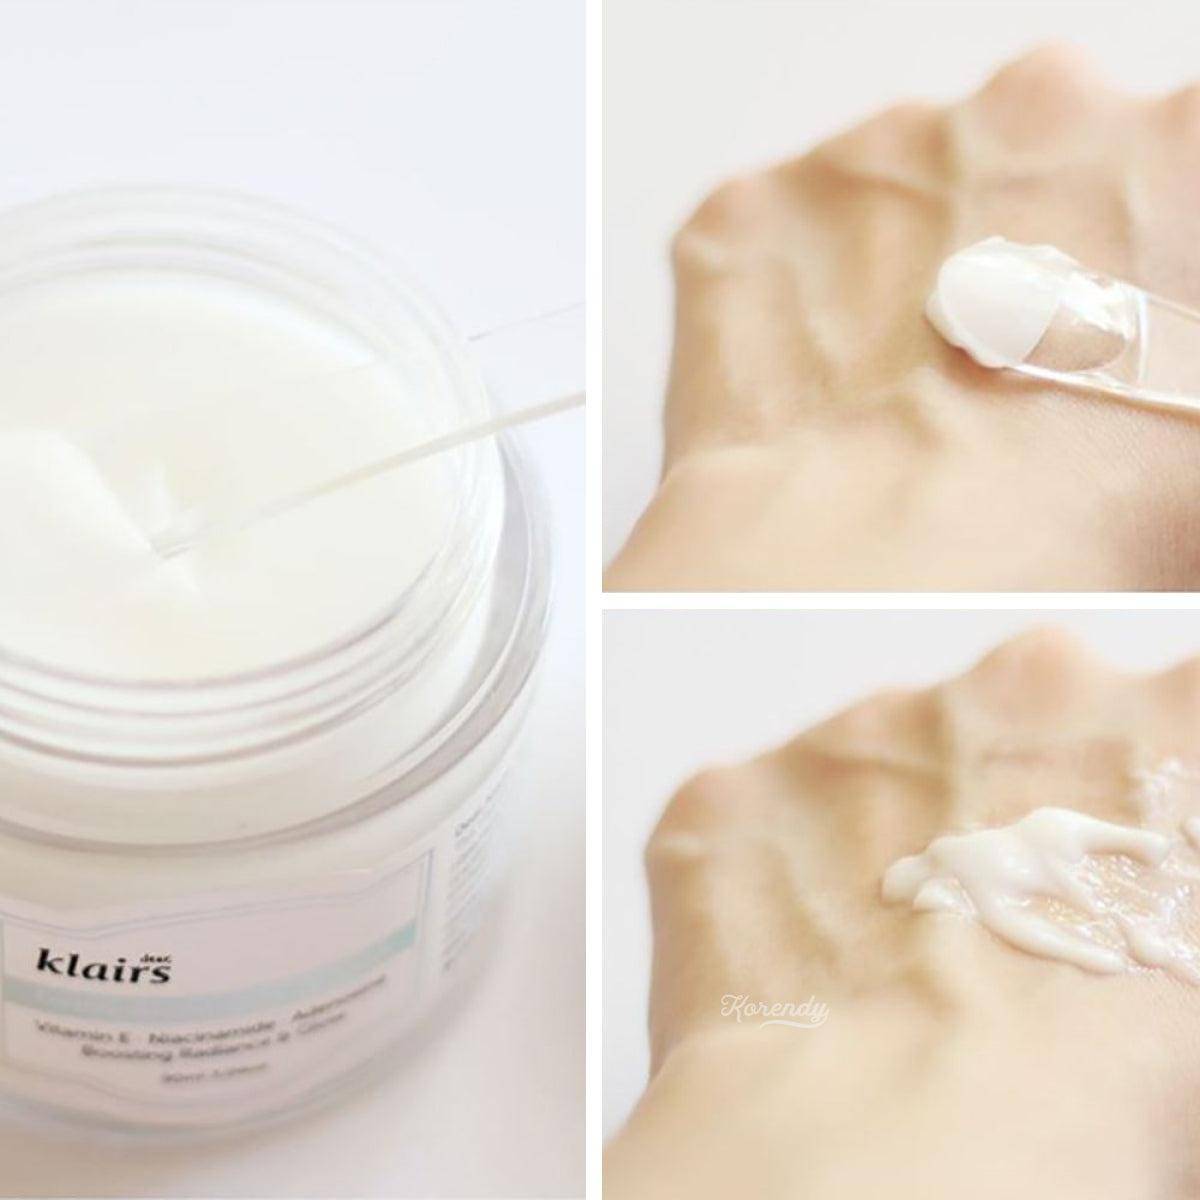 Klairs - Freshly Juiced Vitamin E Mask 15ml/90ml Gece Maskesi Korendy Türkiye Turkey Kore Kozmetik Kbeauty Cilt Bakım 